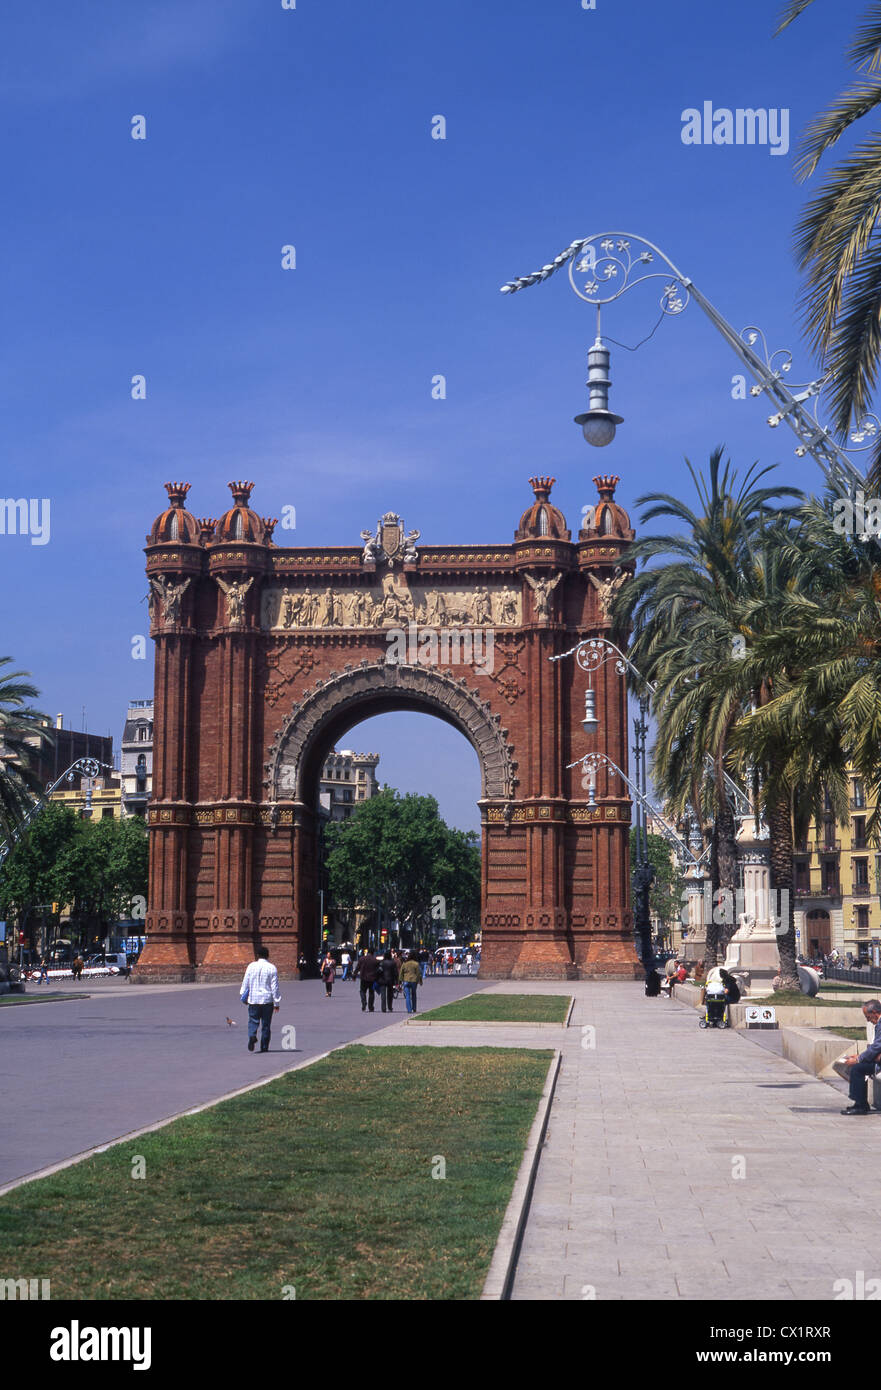 Arc de Triomf Triumphal arch Parc de la Ciutadella Barcelona Catalunya Spain Stock Photo